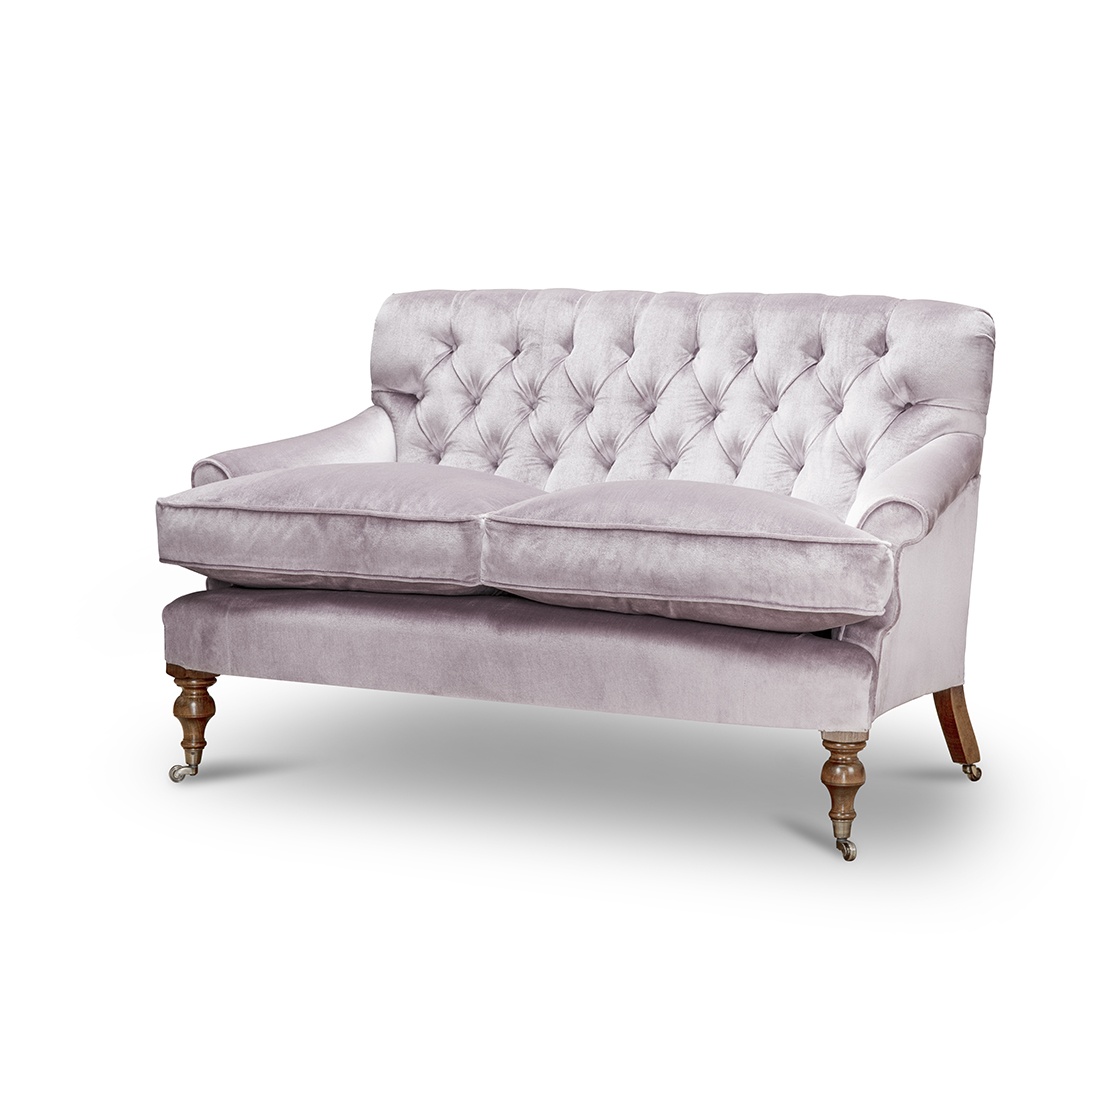 Emily 2 seater sofa in Capri silk velvet - Blush - Beaumont & Fletcher